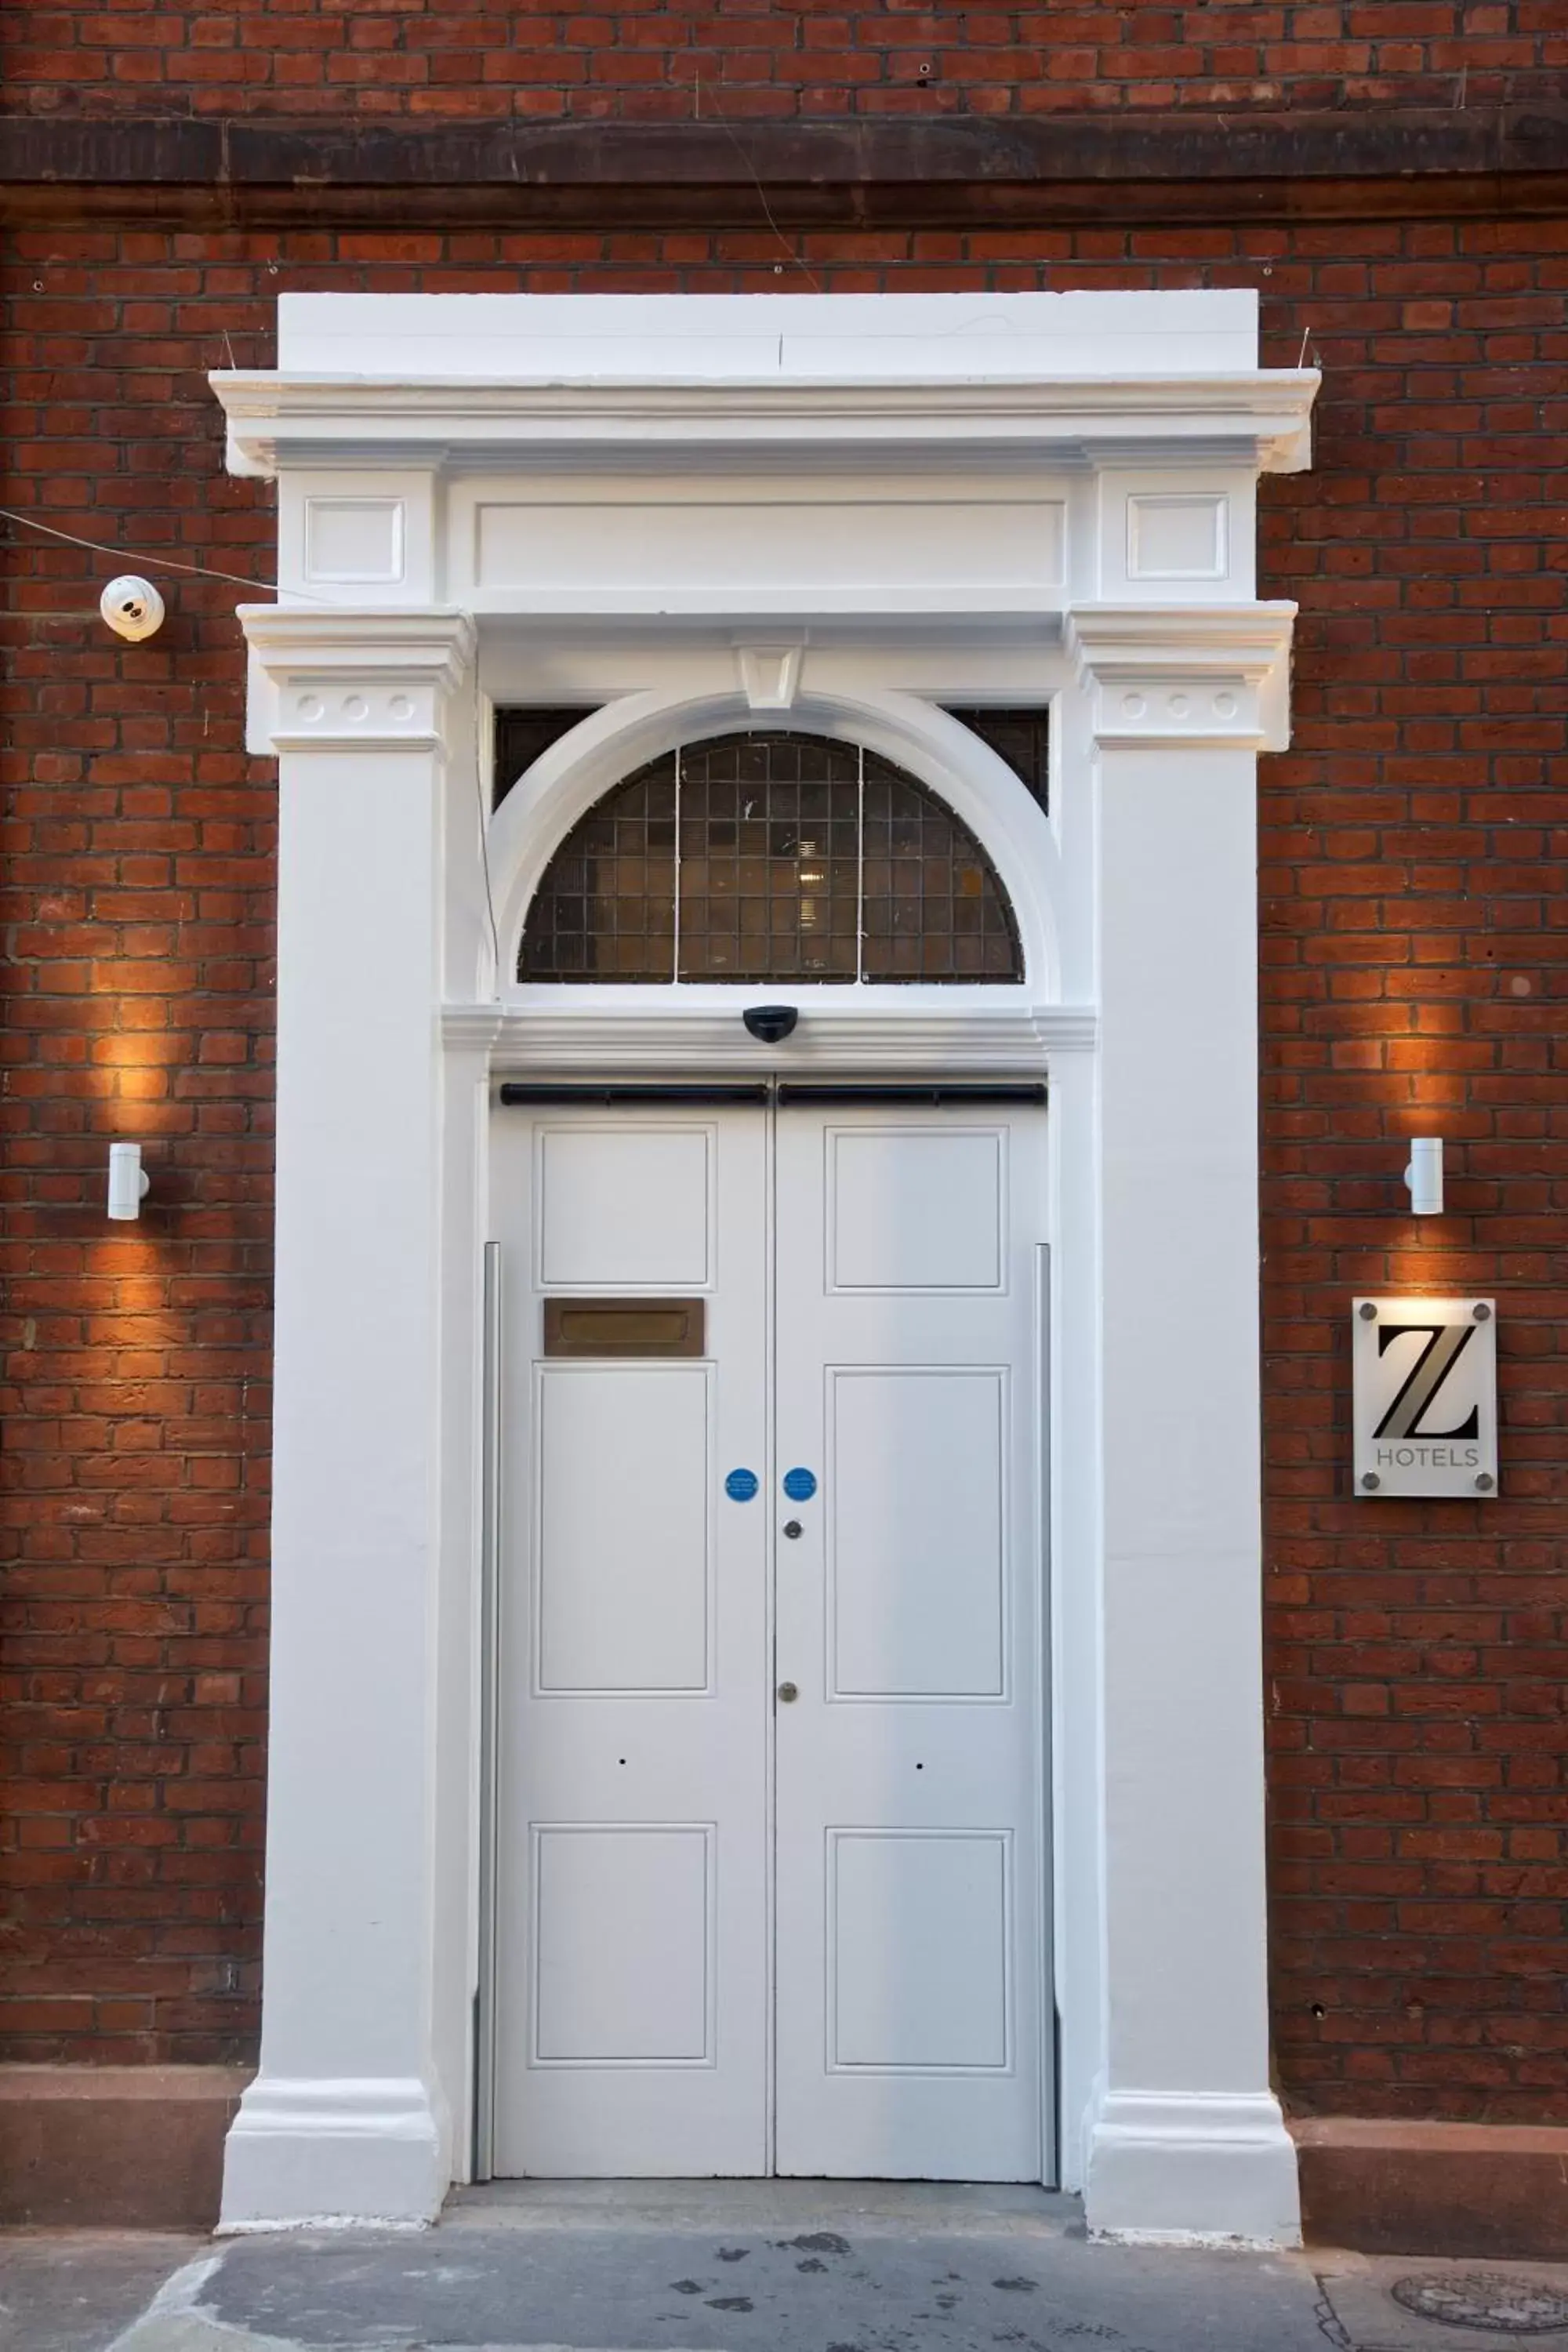 Facade/entrance in The Z Hotel Covent Garden